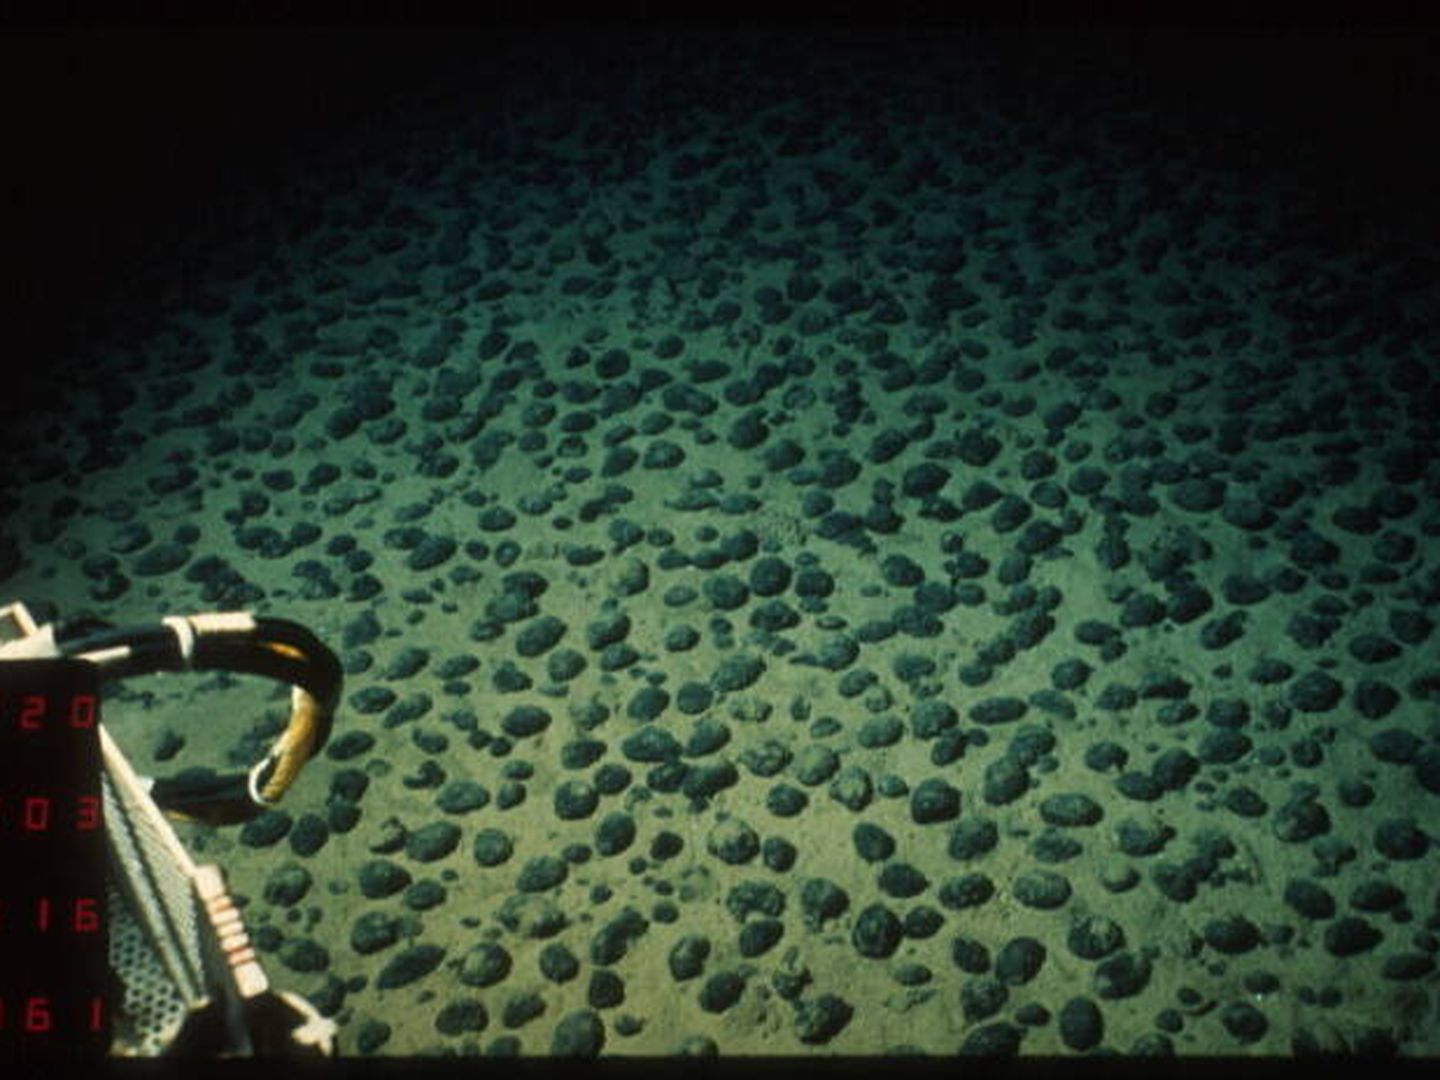 Nódulos polimetálicos en el lecho marino a gran profundidad.